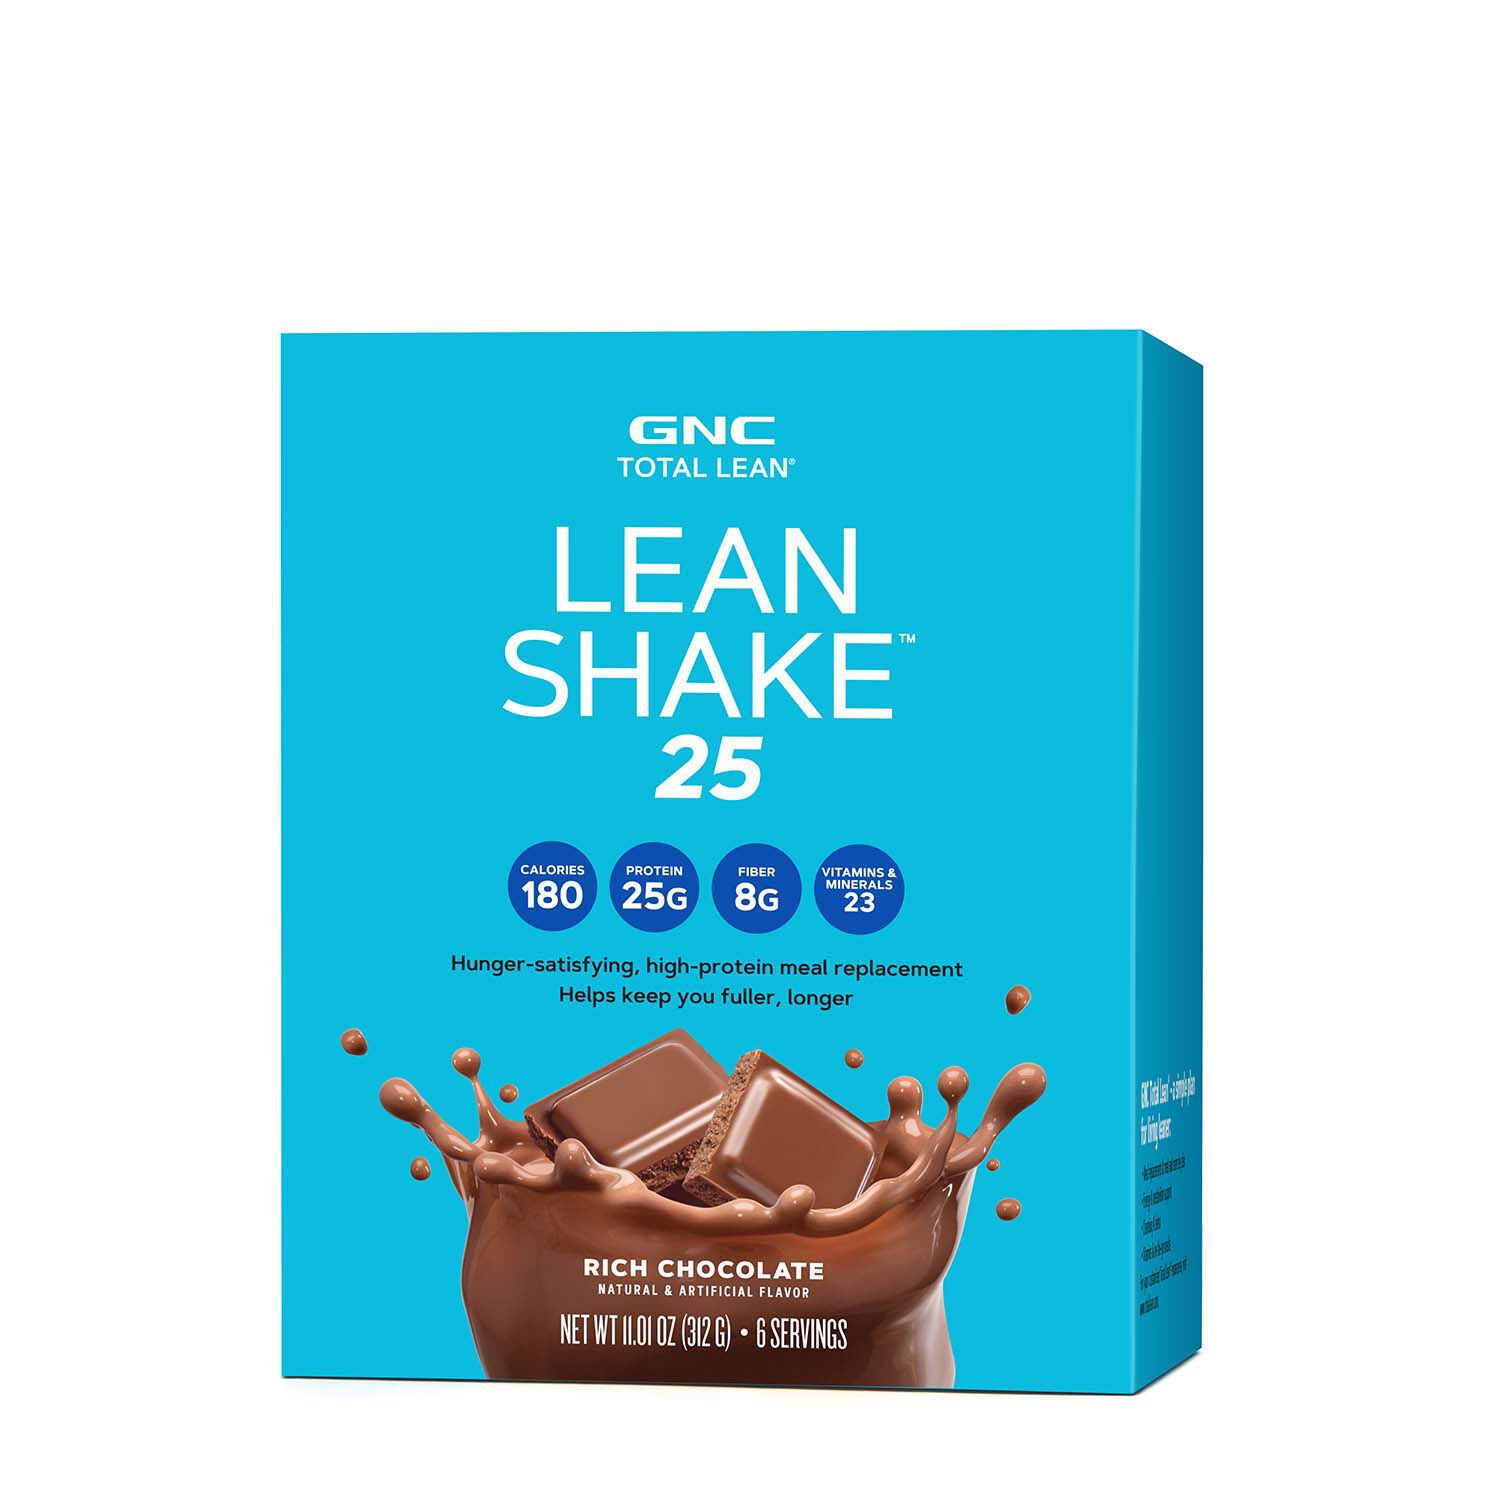 Gnc Total Lean Lean Shake 25, Rich Chocolate - 22.08 oz